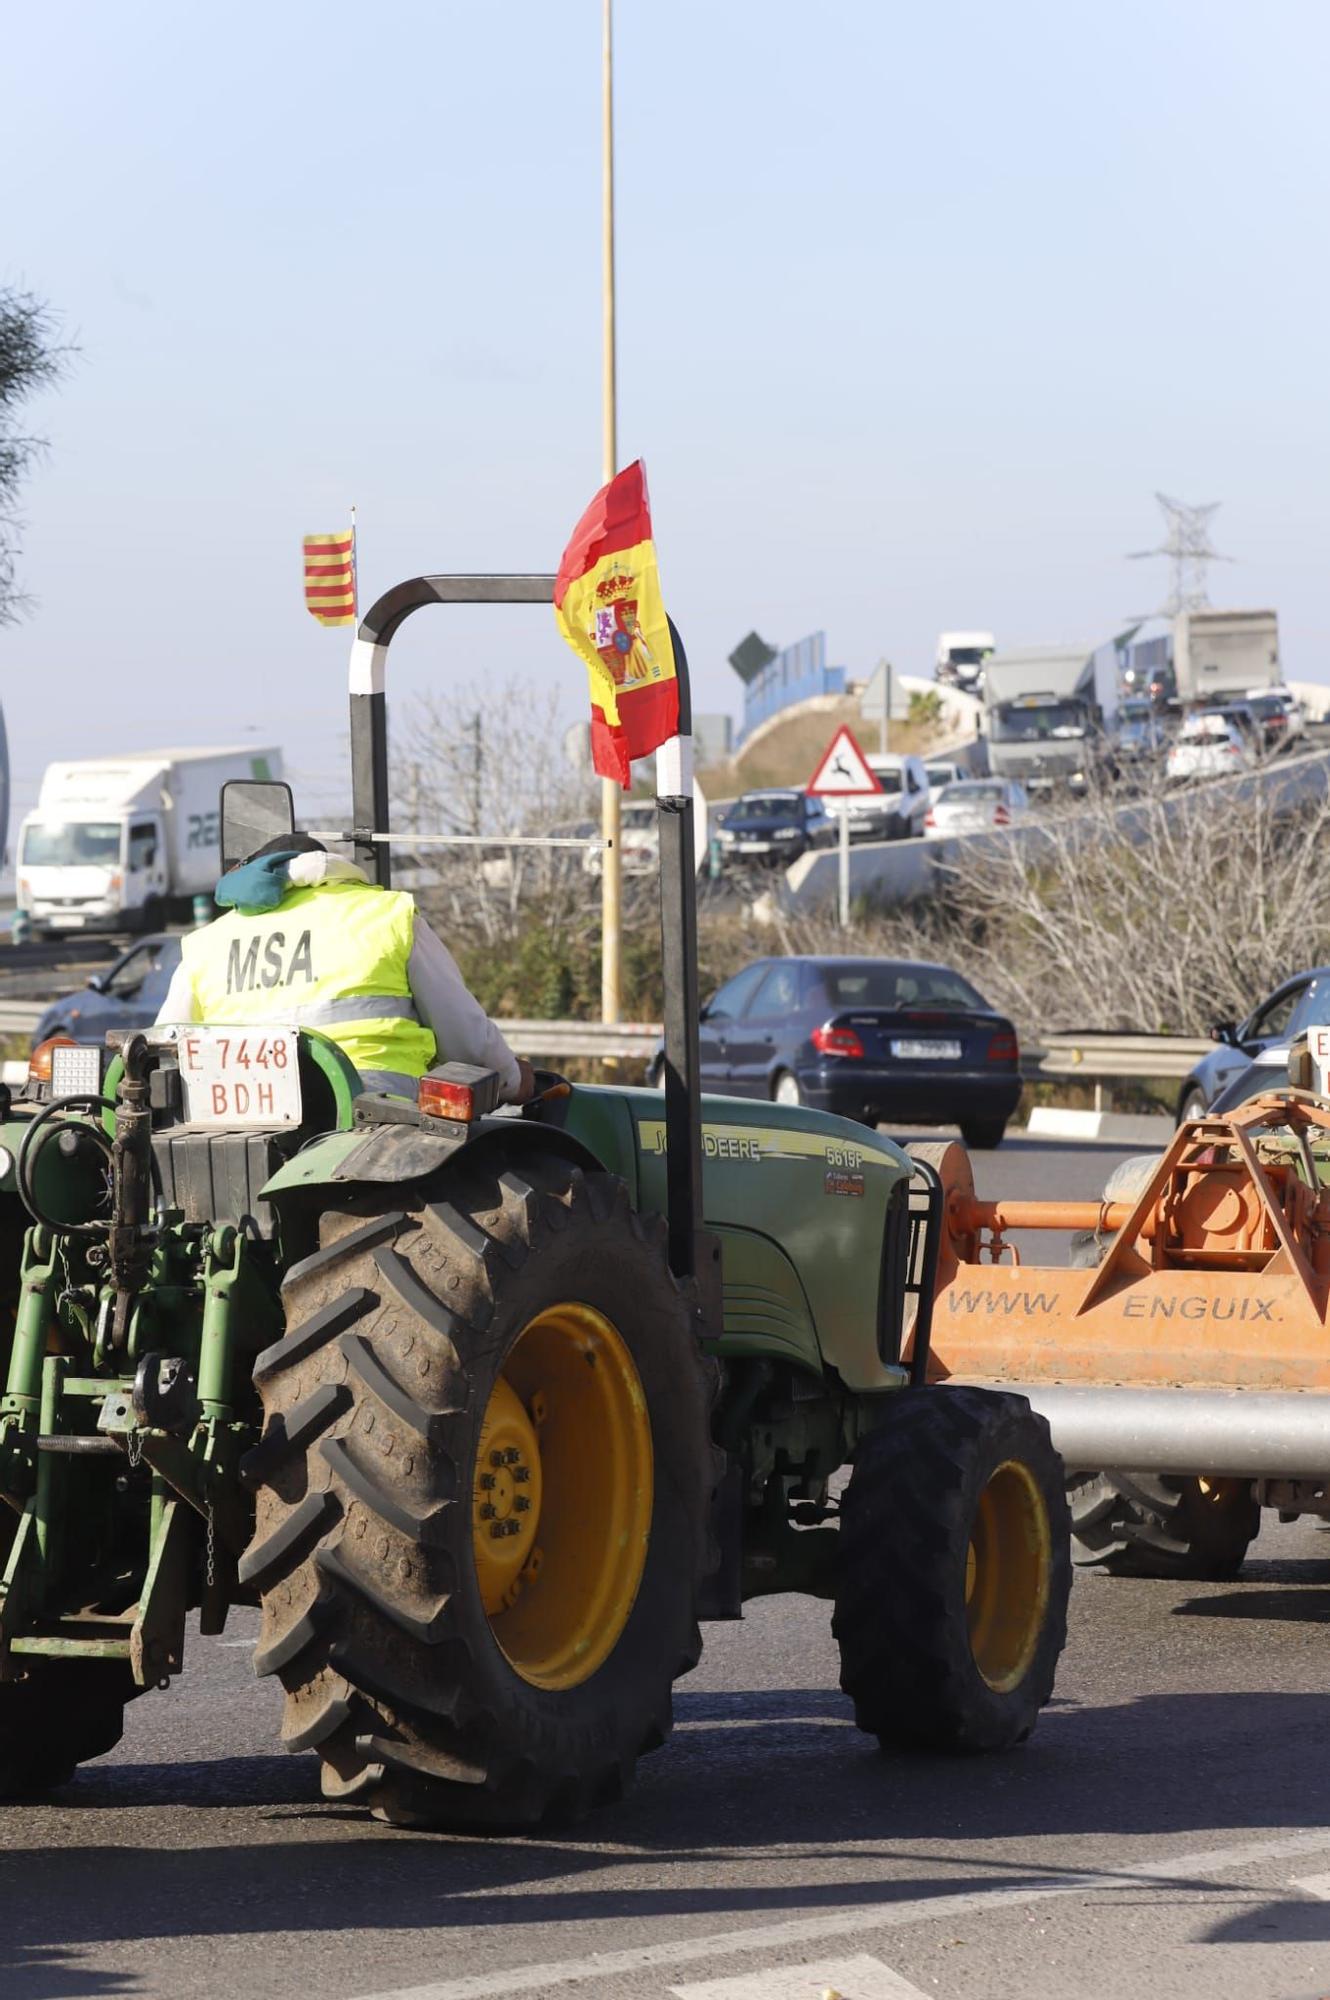 Las tractoradas dificultan el tráfico en la A-7 hacia Valencia